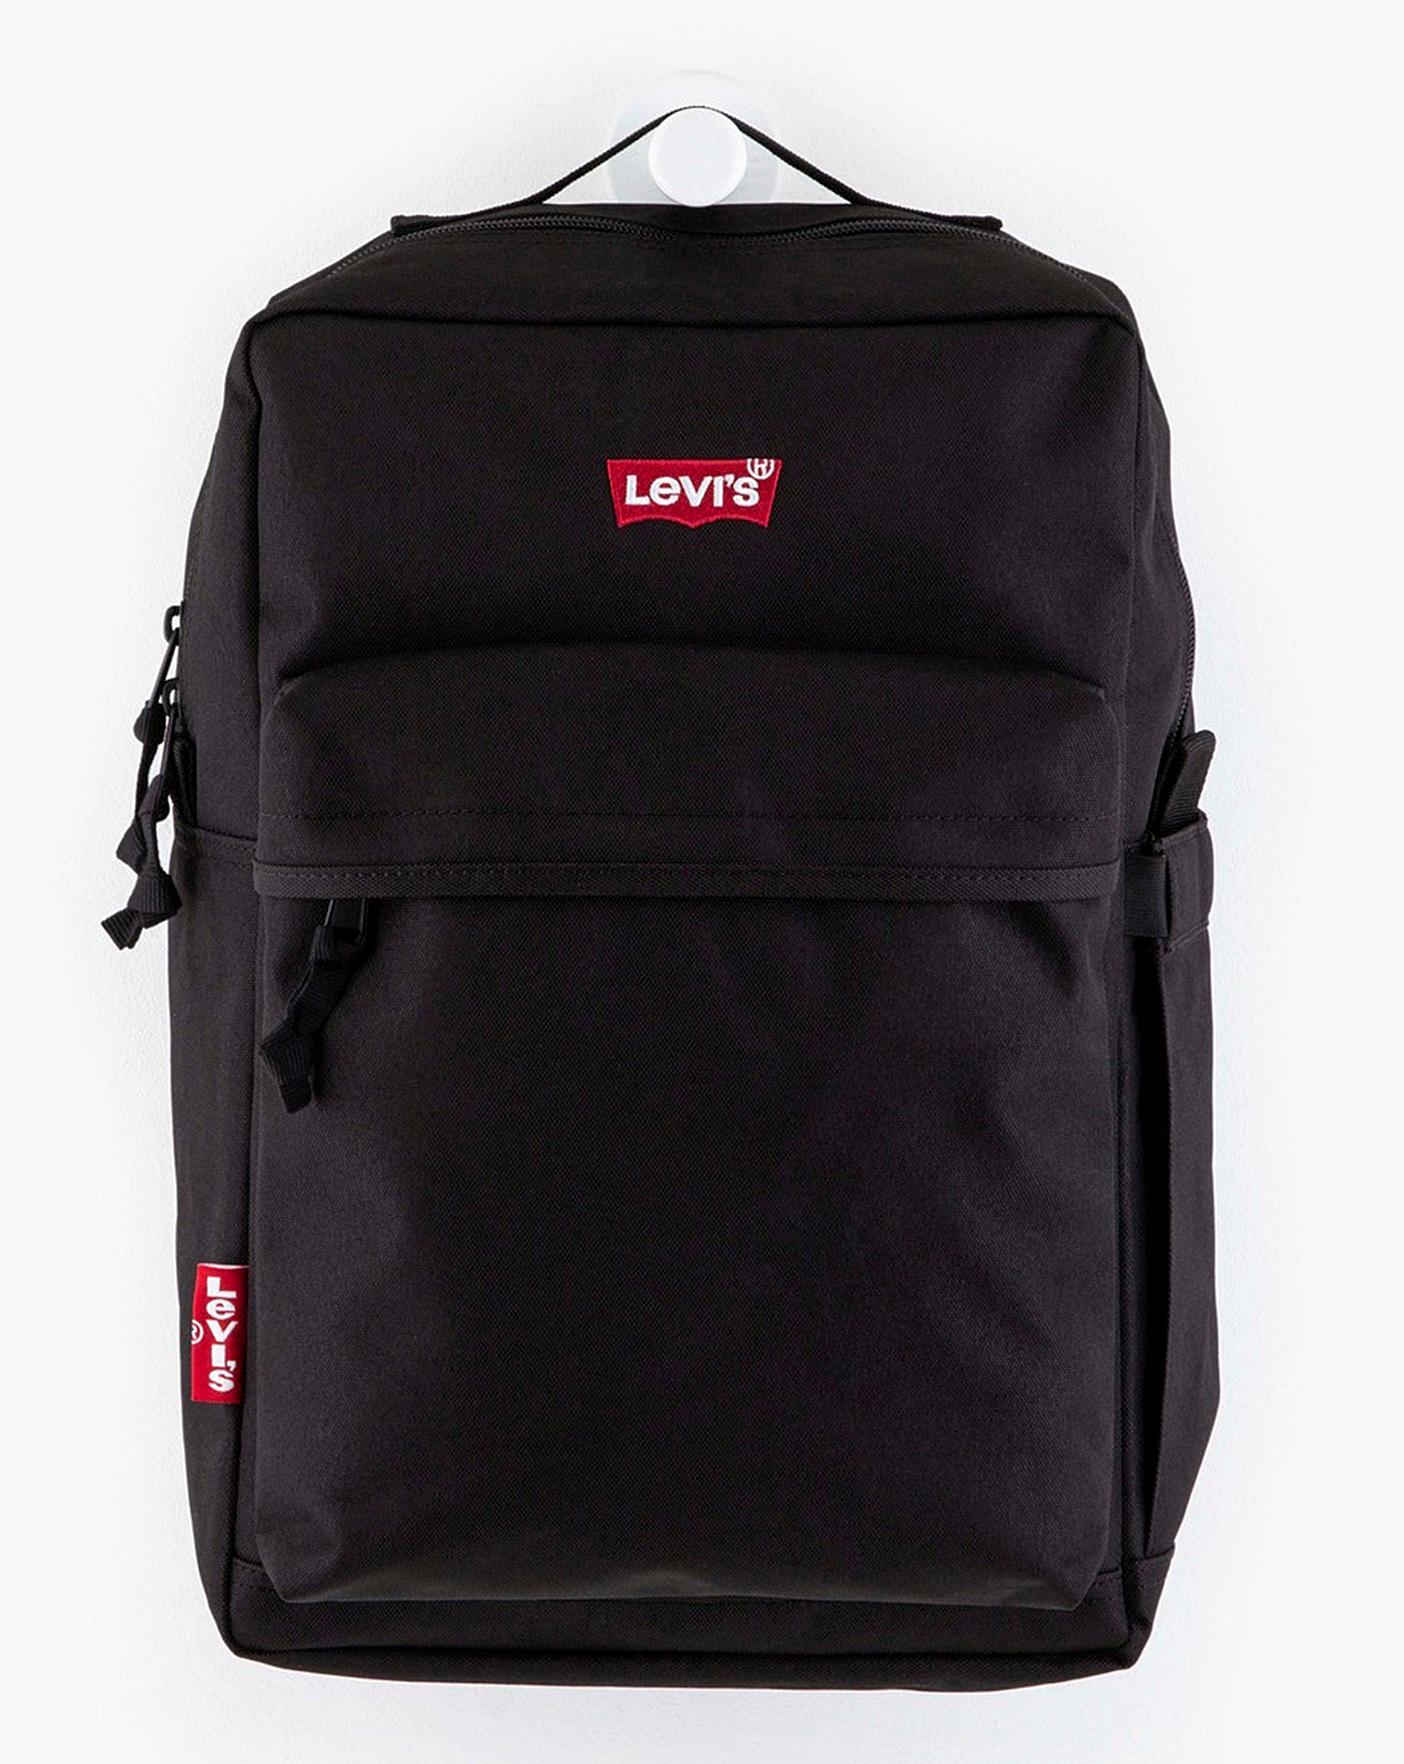 levis back pack